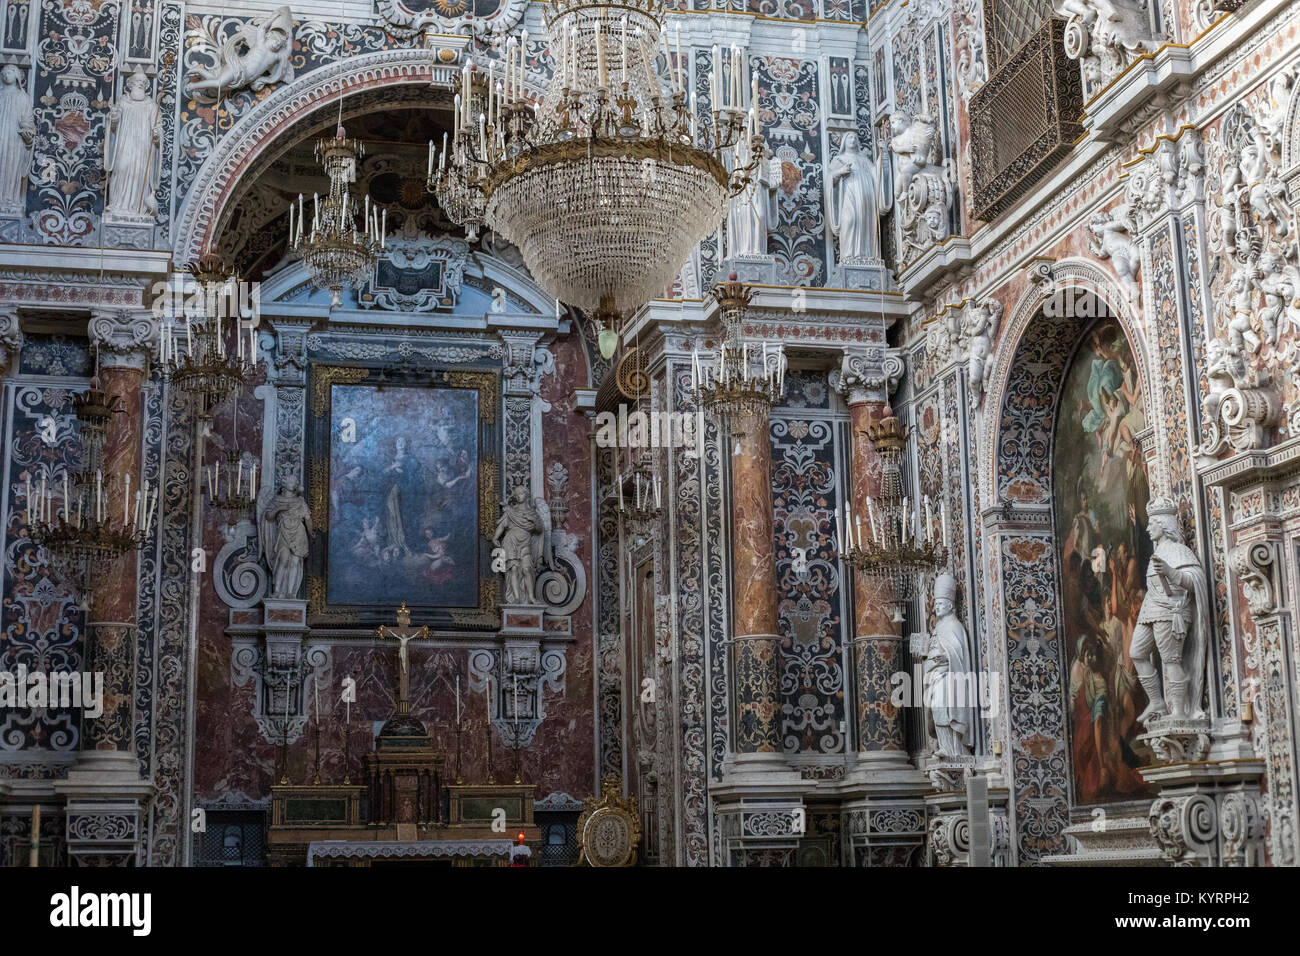 Palermo, Sicily. Dec 2017: Interior of Church of Pietà Saint Mary of the Visitation (Chiesa dell'Immacolata Concezione, Mercato Capo) with decorations Stock Photo